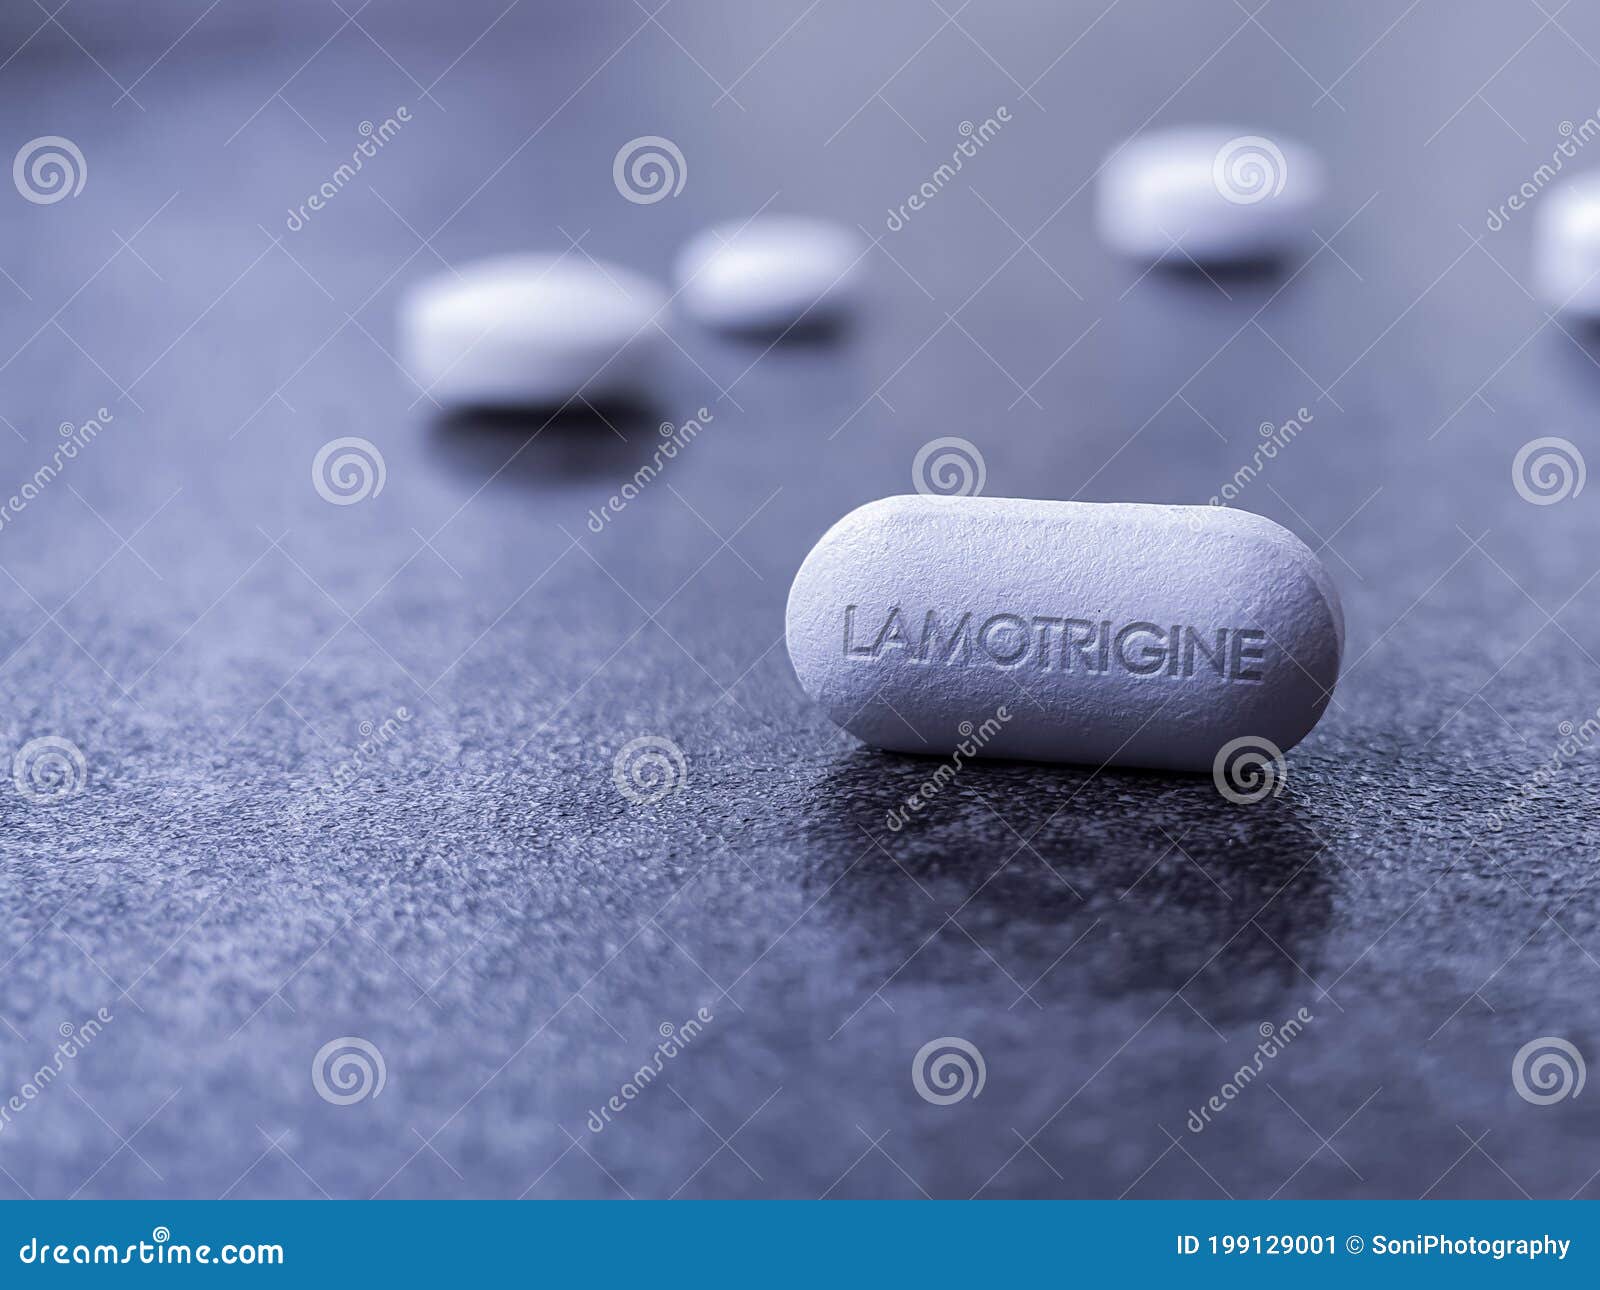 lamotrigine pill used to treat epilepsy